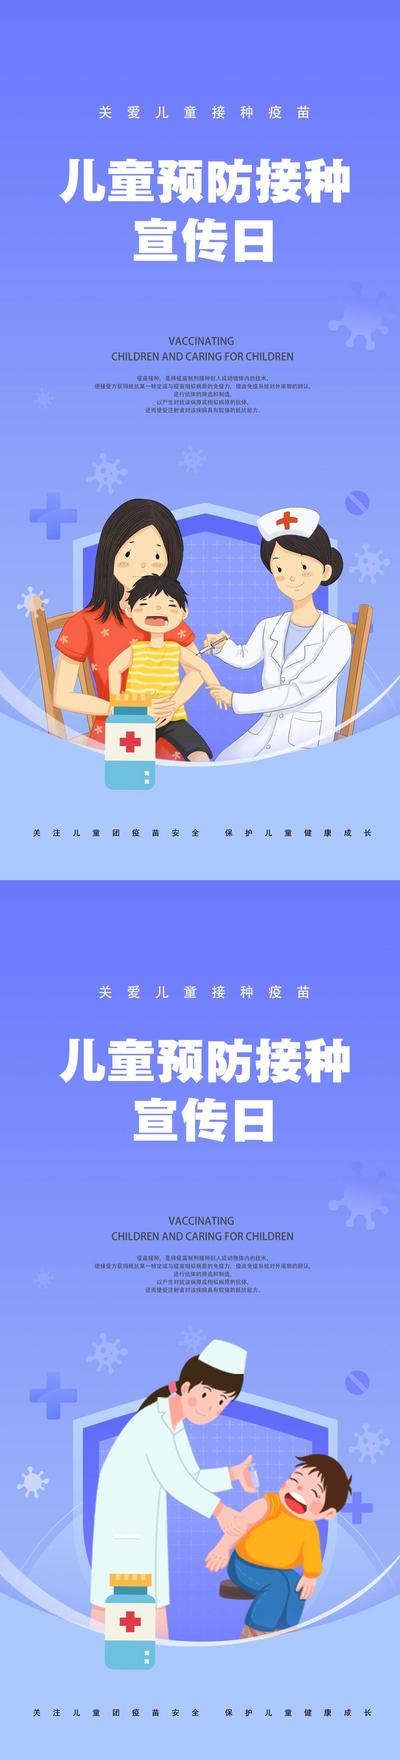 【南门网】广告 儿童 疫苗 接种 病毒 预防 健康 关爱 保护 系列 茶壶